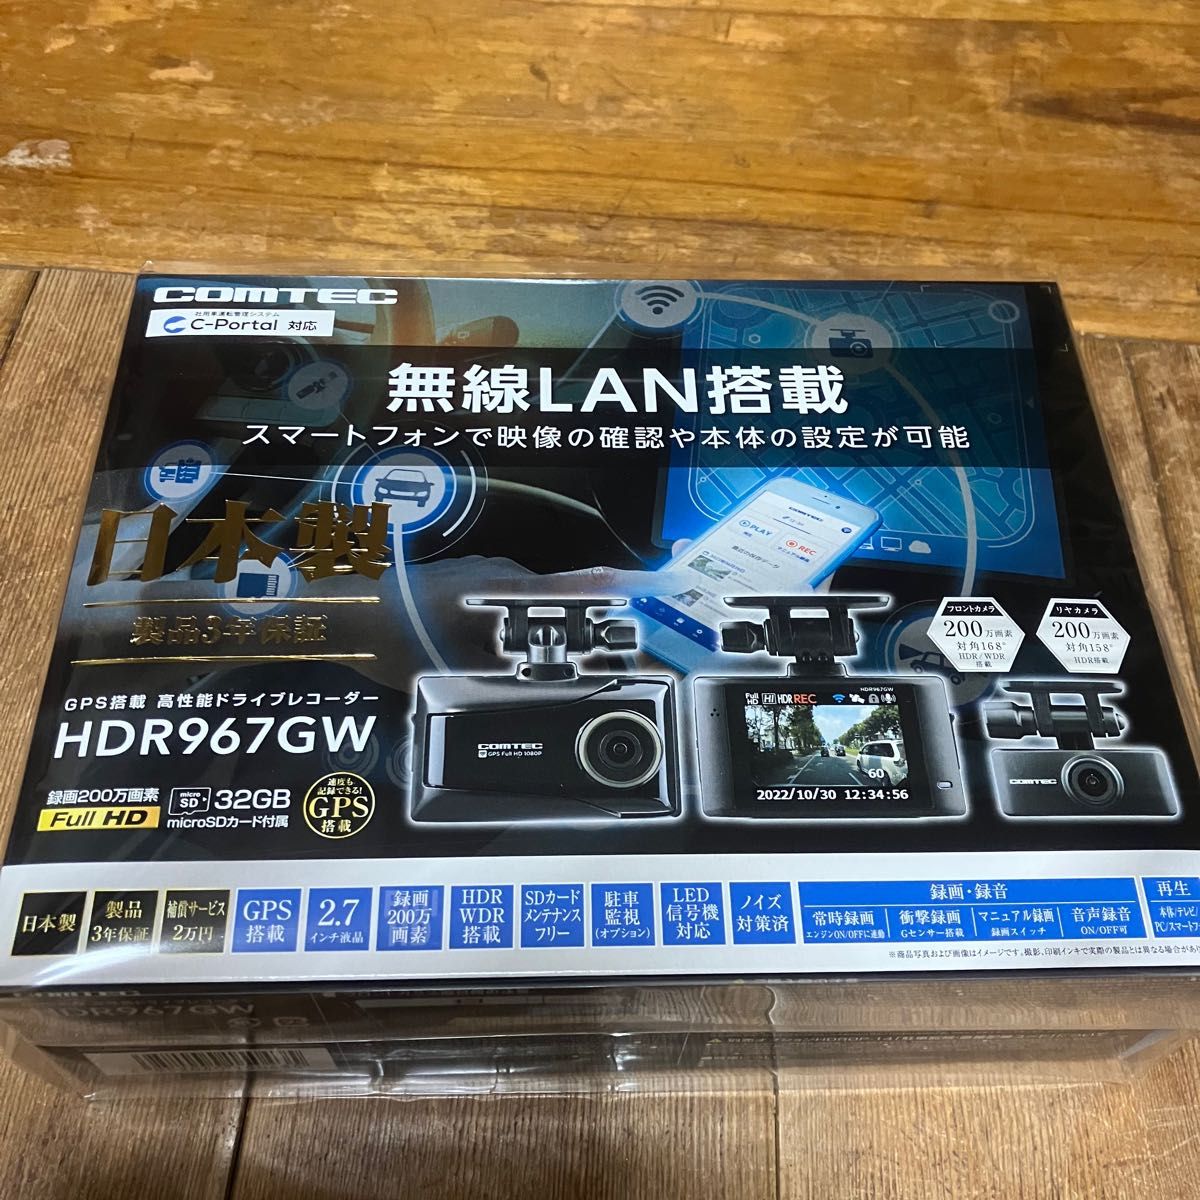 【新品未開封】コムテック HDR967GW 無線LAN 前後2カメラ 日本製 ノイズ対策済 フルHD 駐車監視 COMTEC